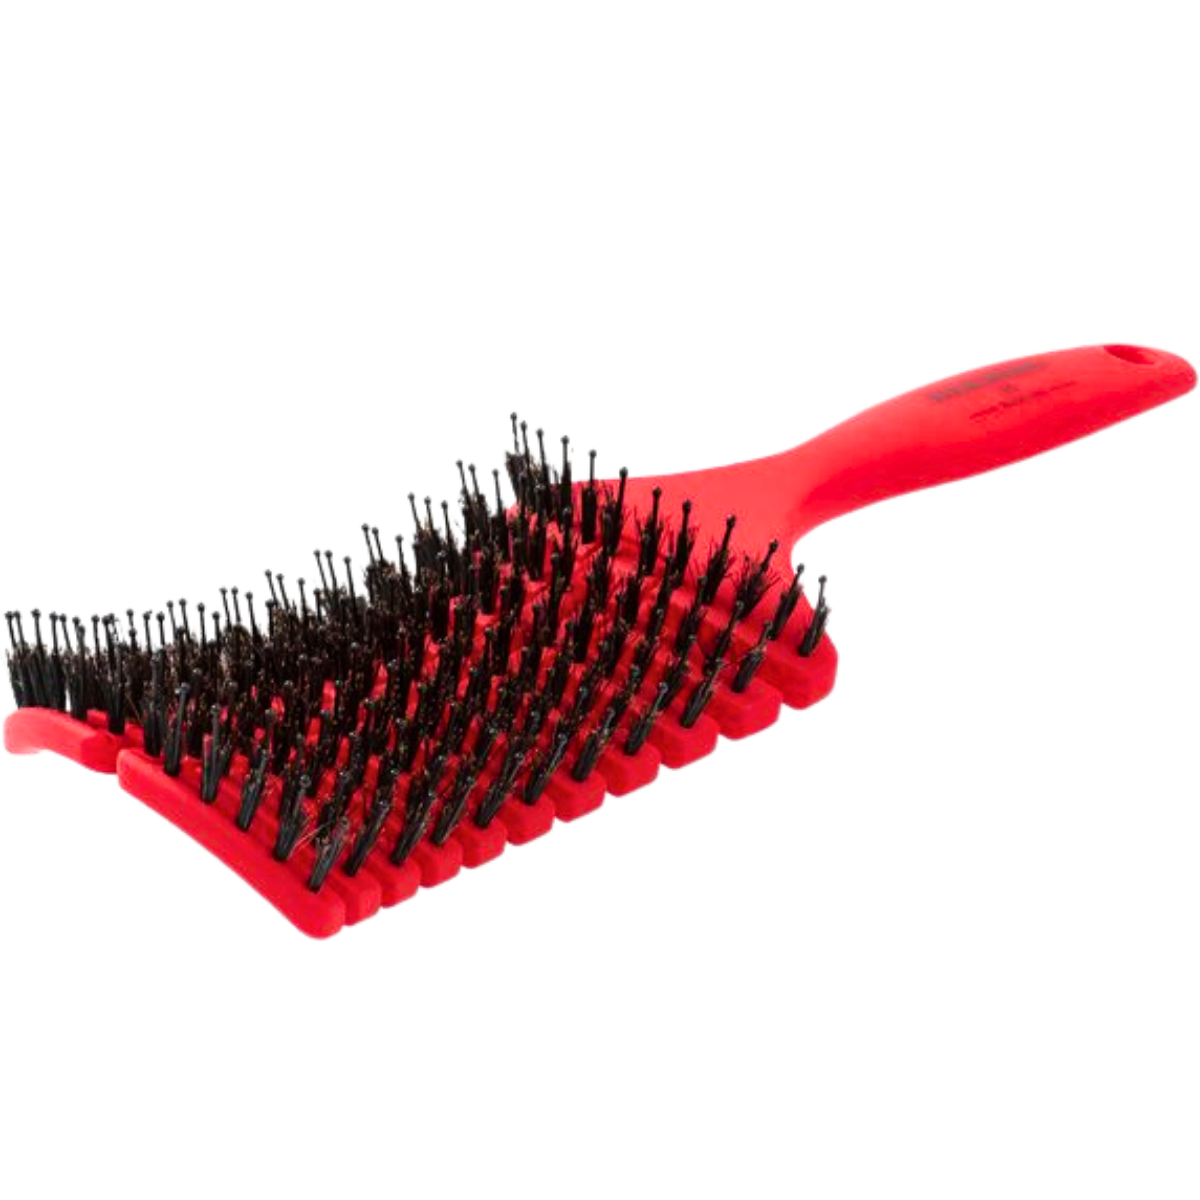 מברשת HERMOSO מיוחדת להתרת קשרים ועיסוי הקרקפת בשלושה צבעים: אדום, שחור ואפור הרמוסו